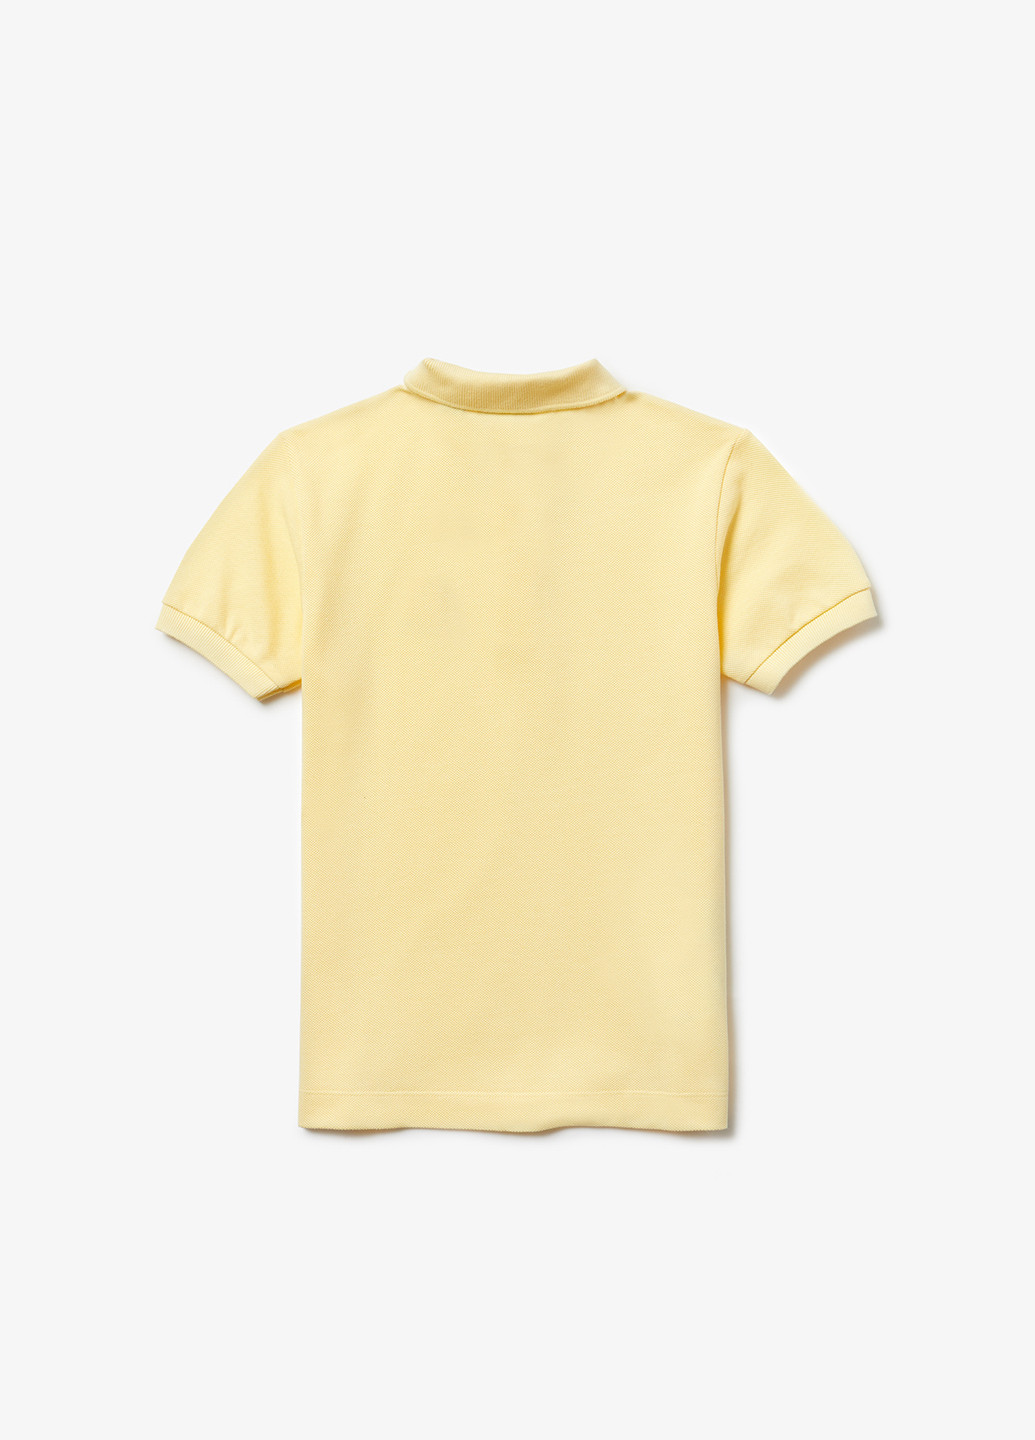 Желтая детская футболка-поло для мальчика Lacoste однотонная